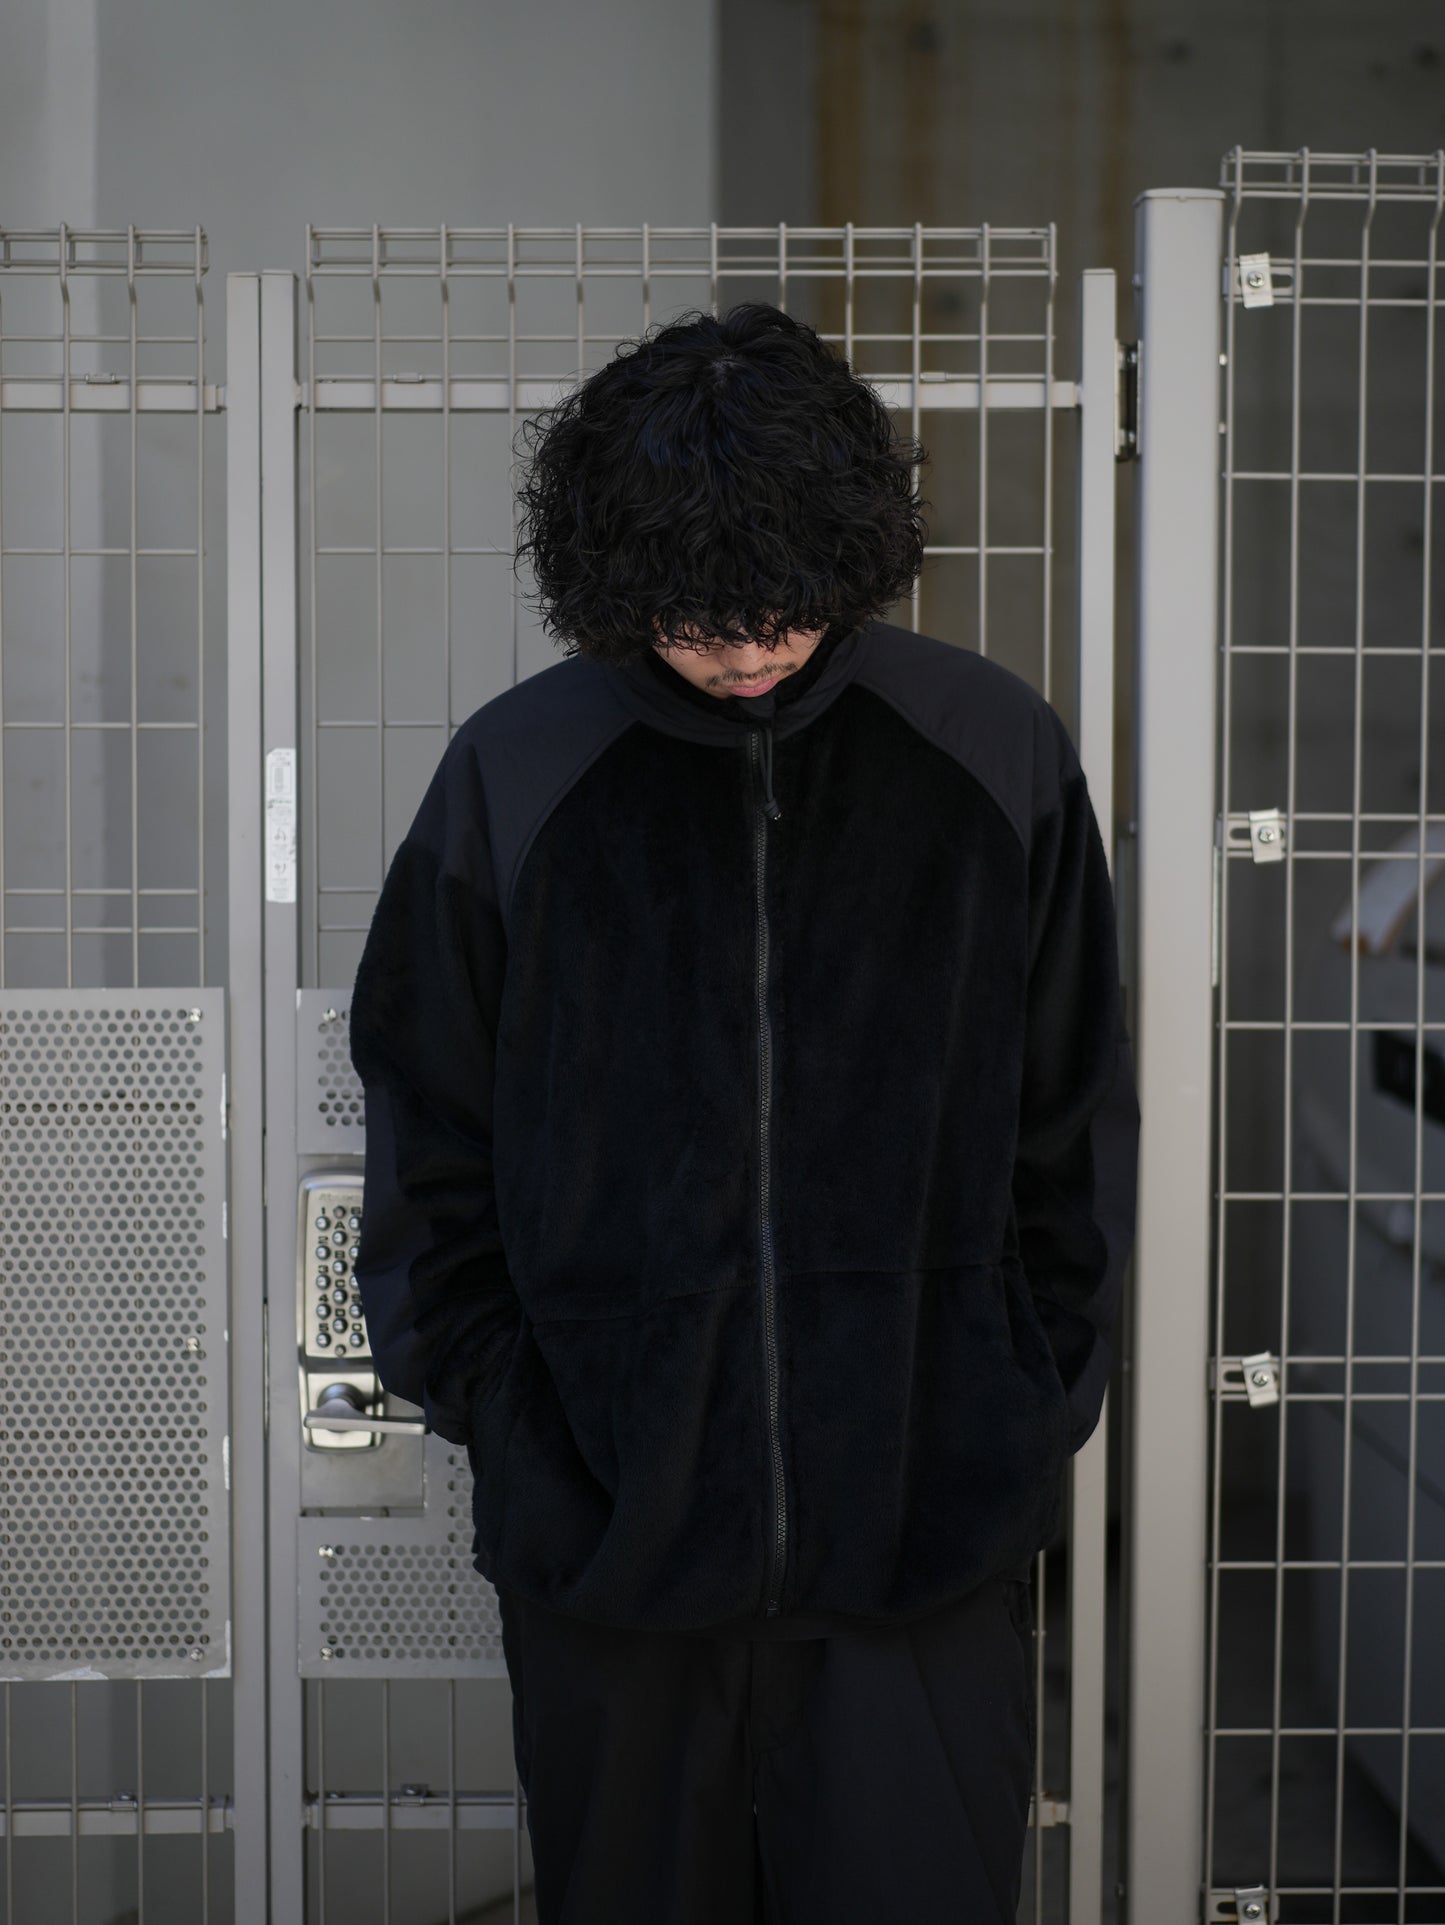 Polartec® Fleece Jacket - BLACK